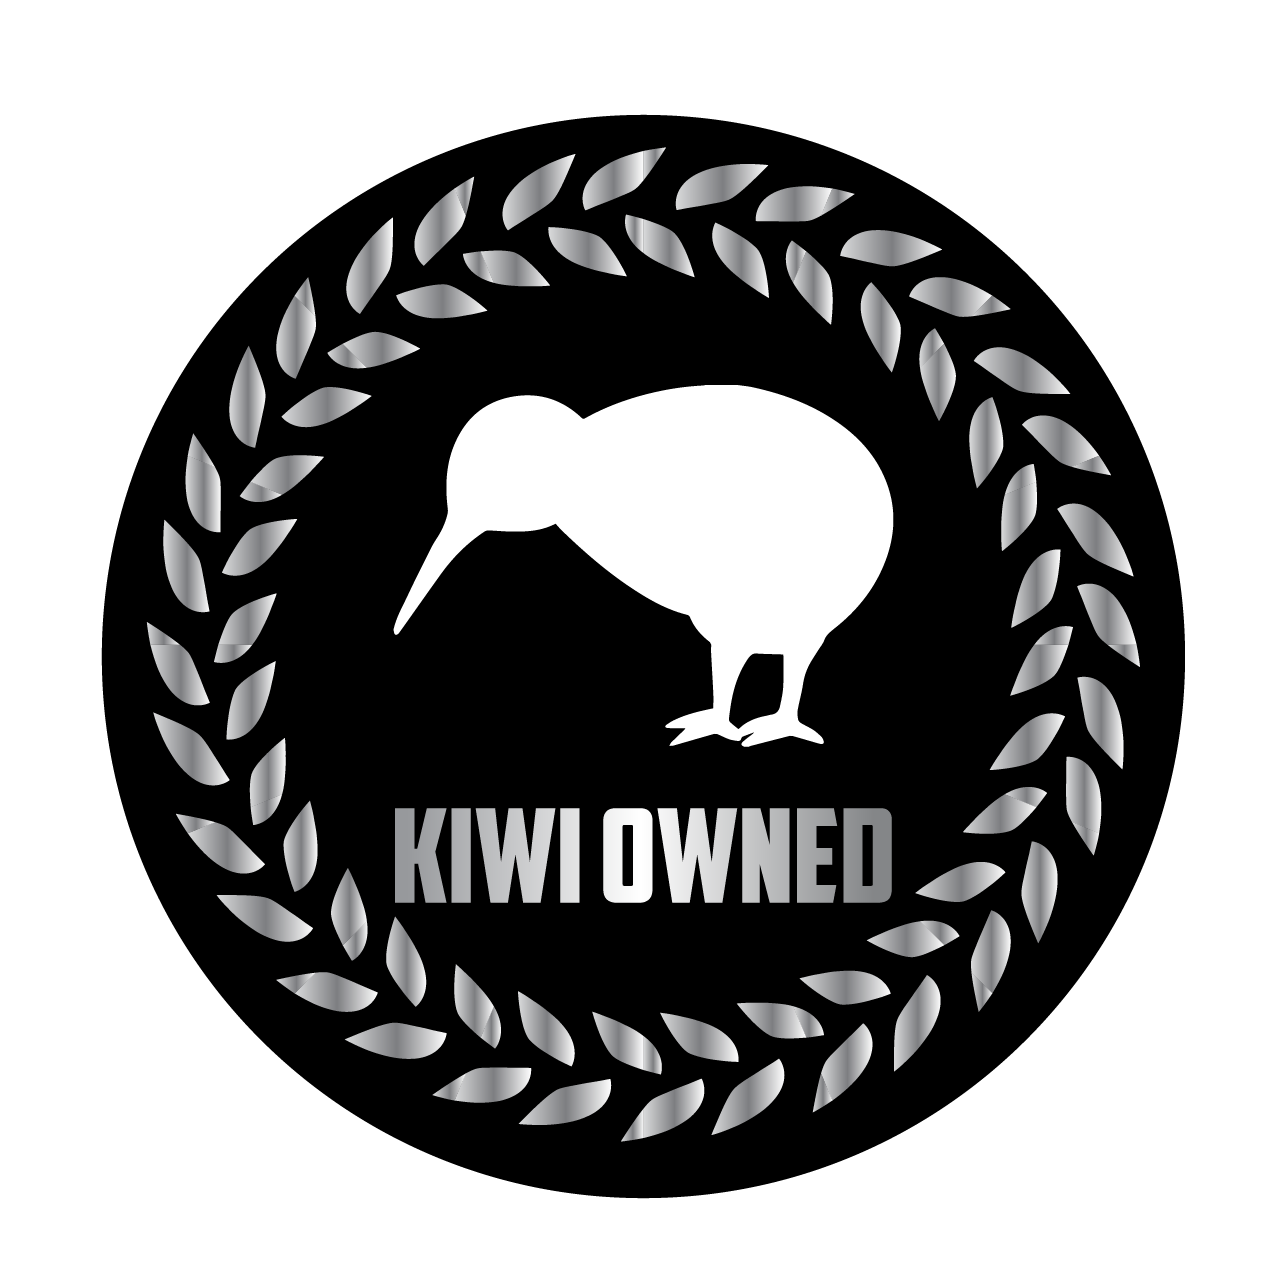 kiwi-owned-logo